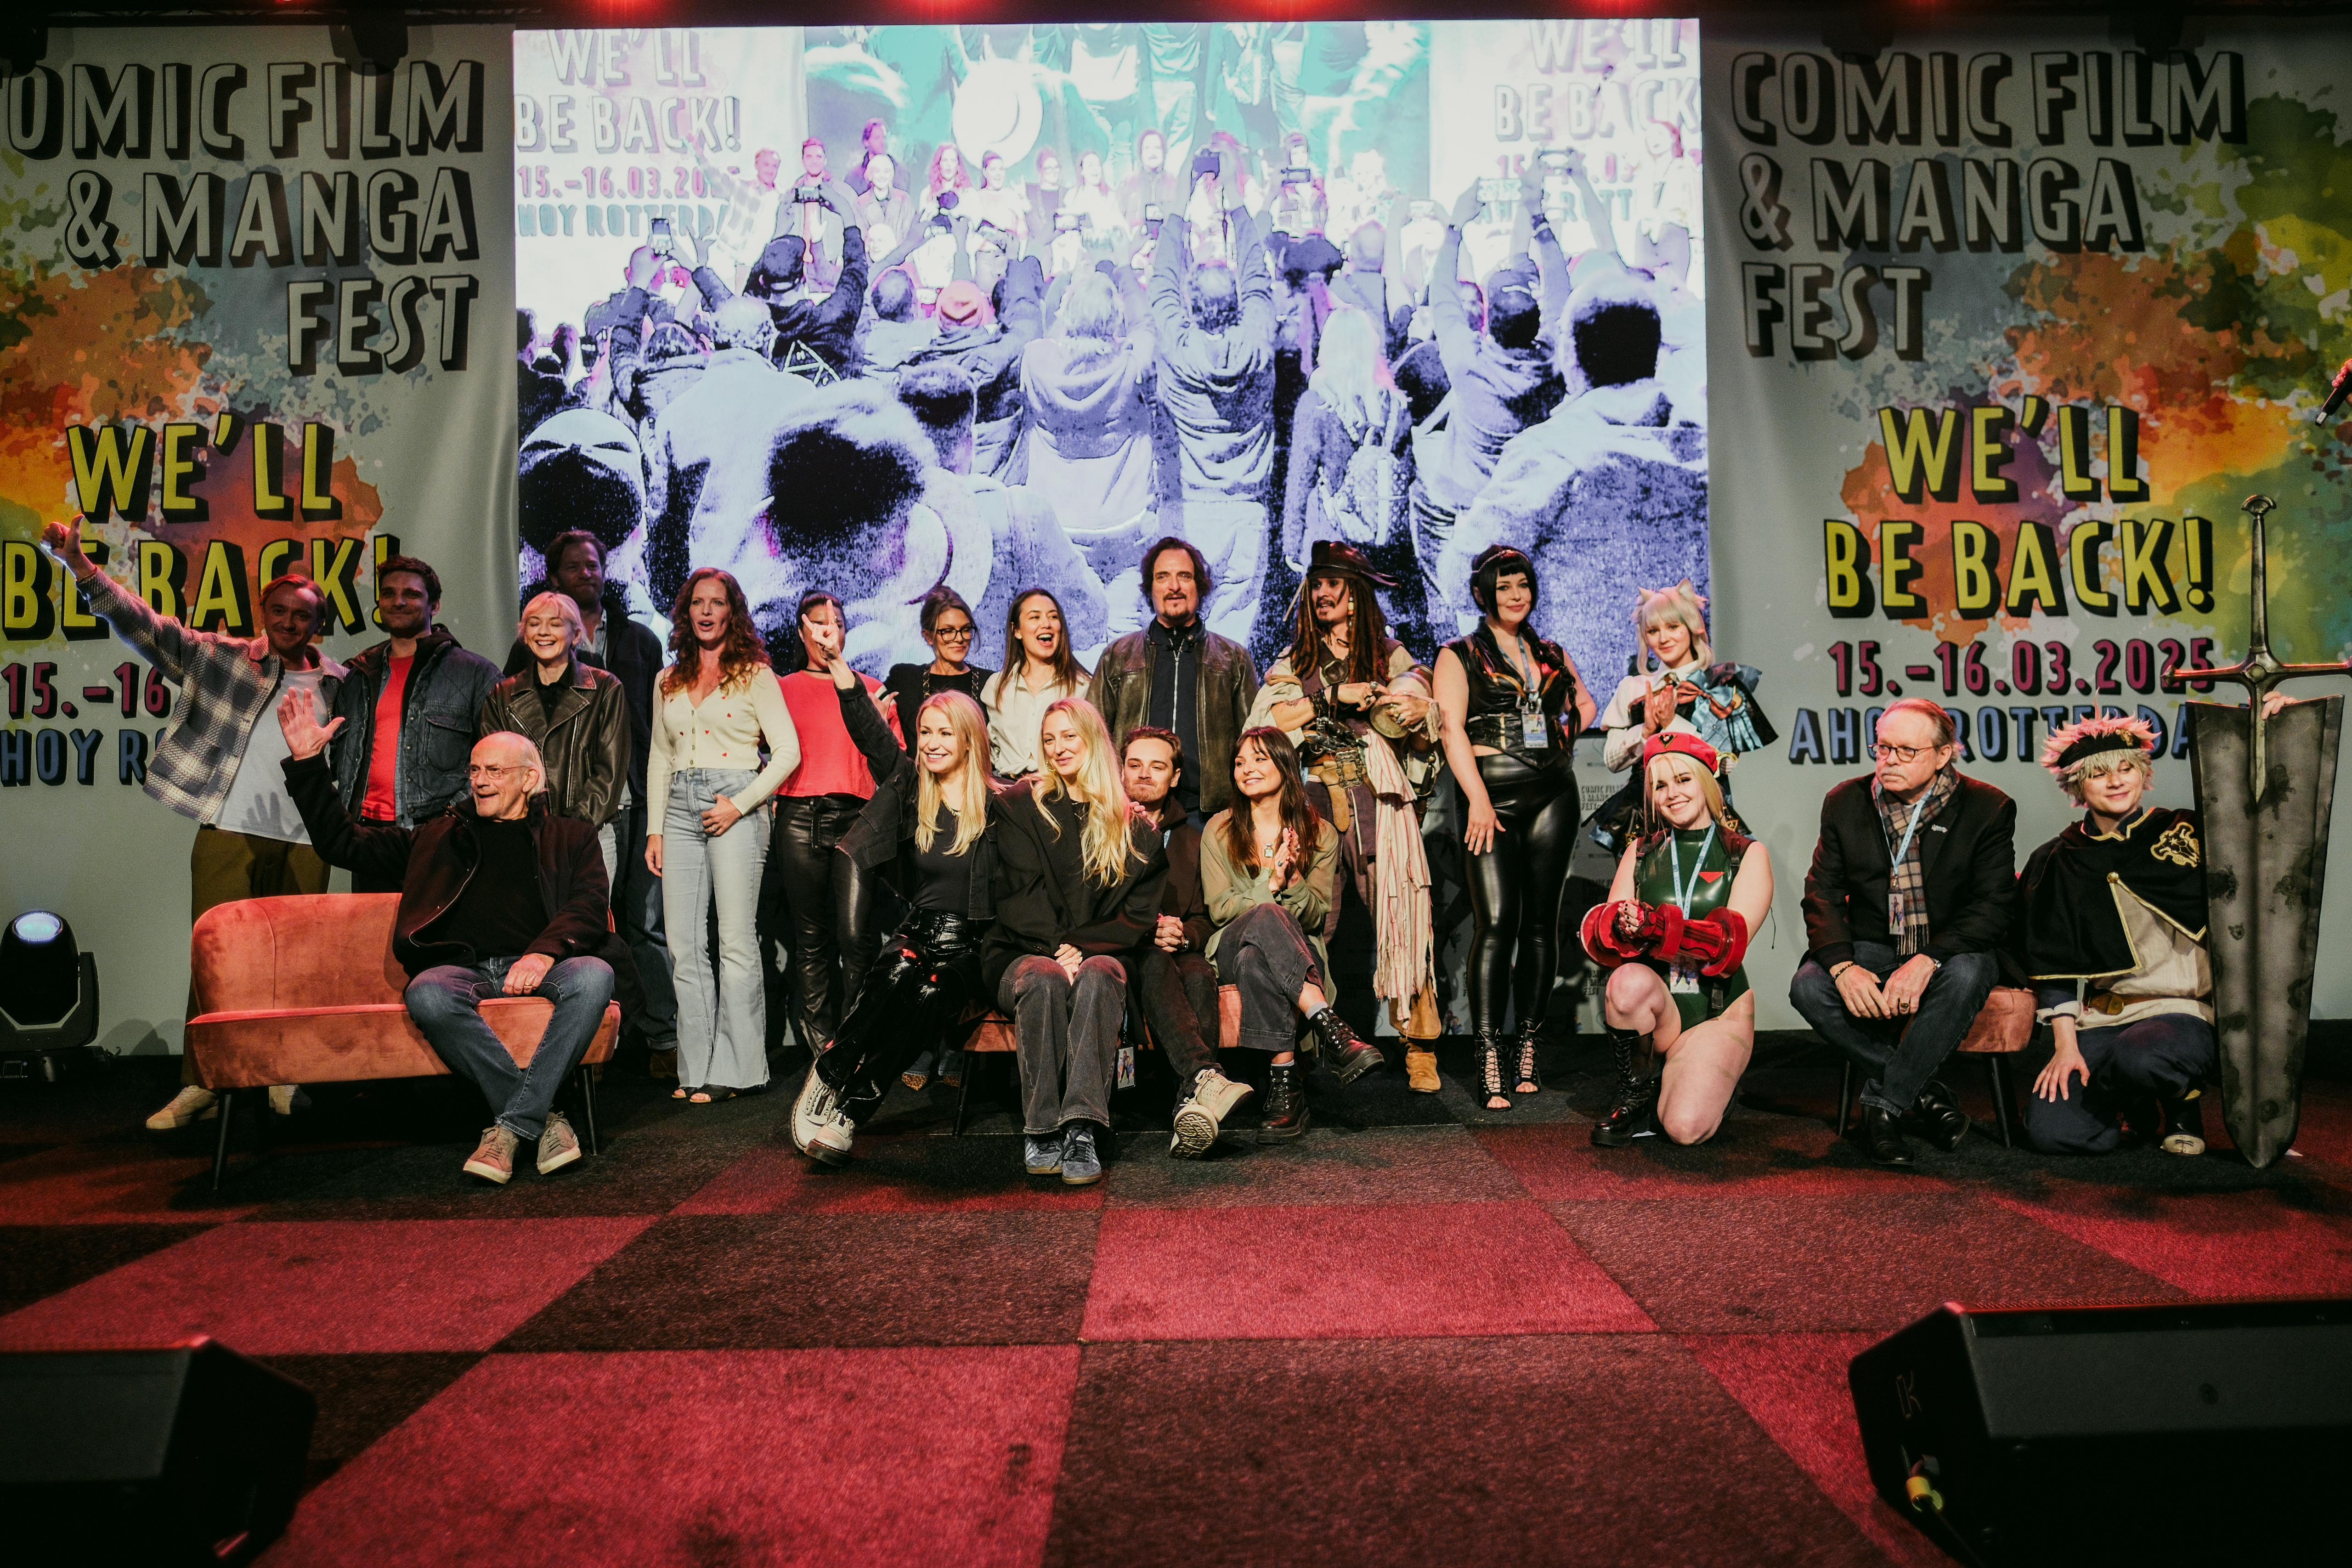 Recap: Comic Film &amp; Manga Fest's triumphant return to Rotterdam